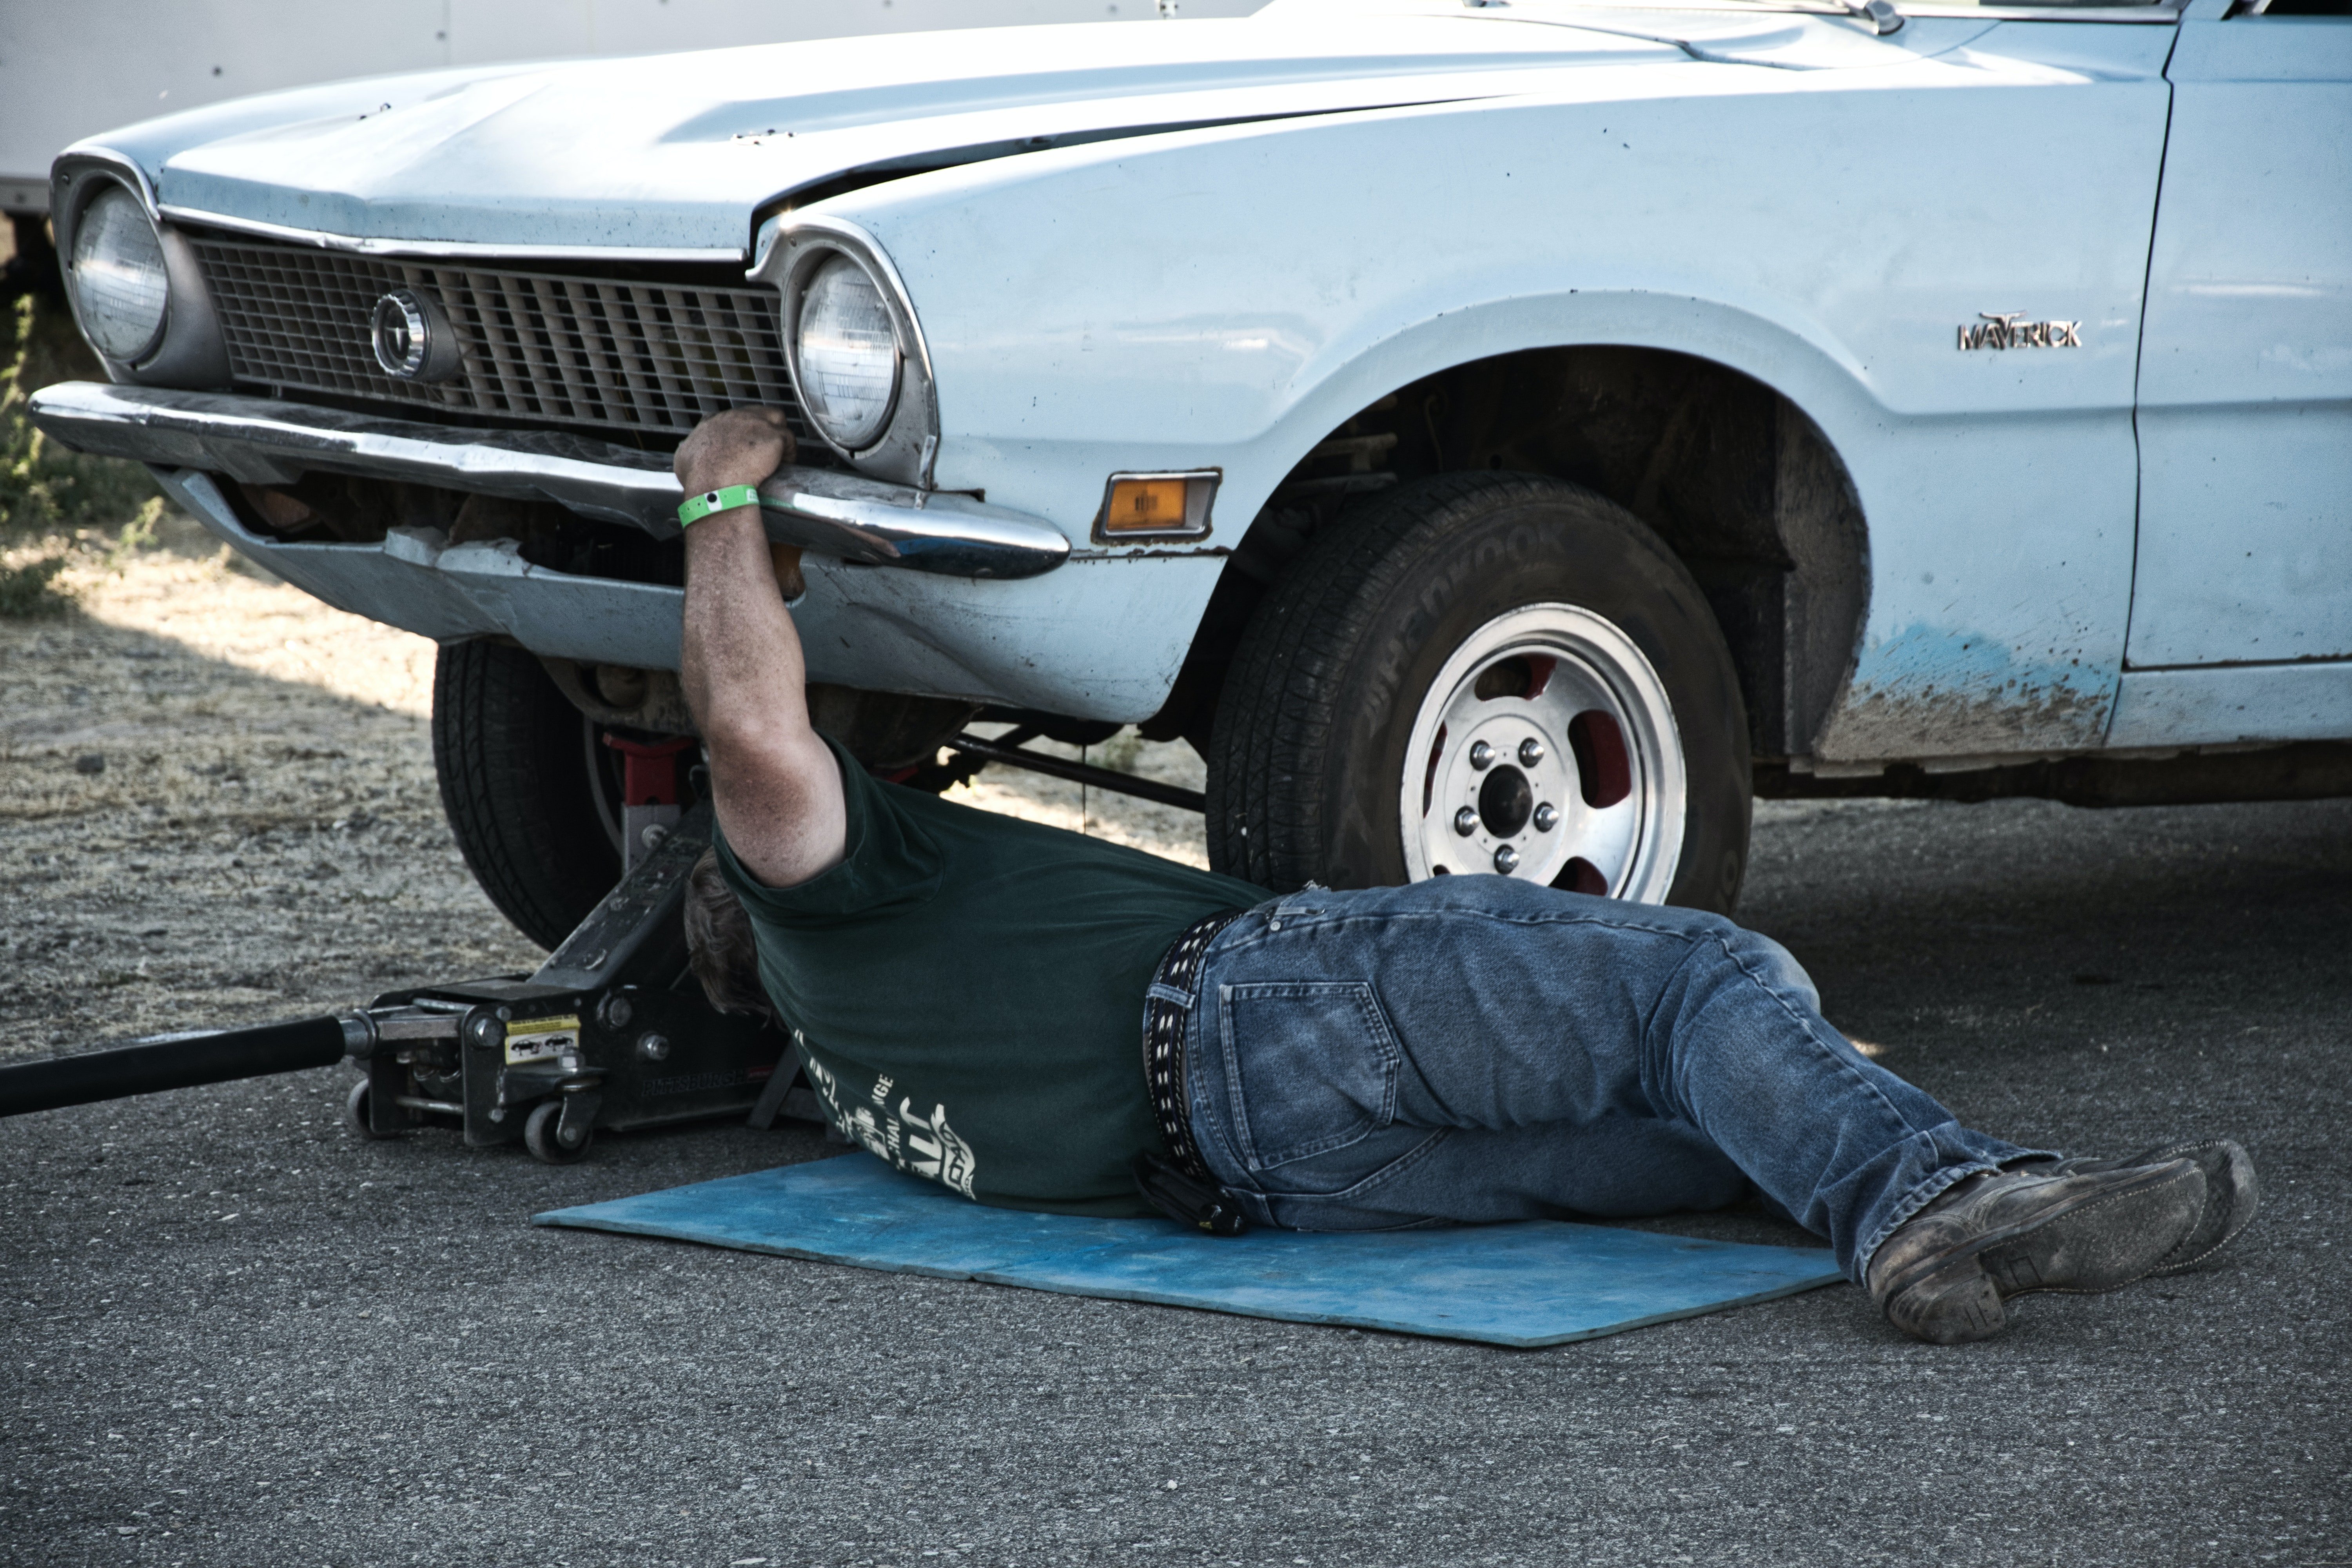 Edward liebte seinen Ford und war immer damit beschäftigt, ihn in seiner Freizeit zu reparieren. | Quelle: Pexels